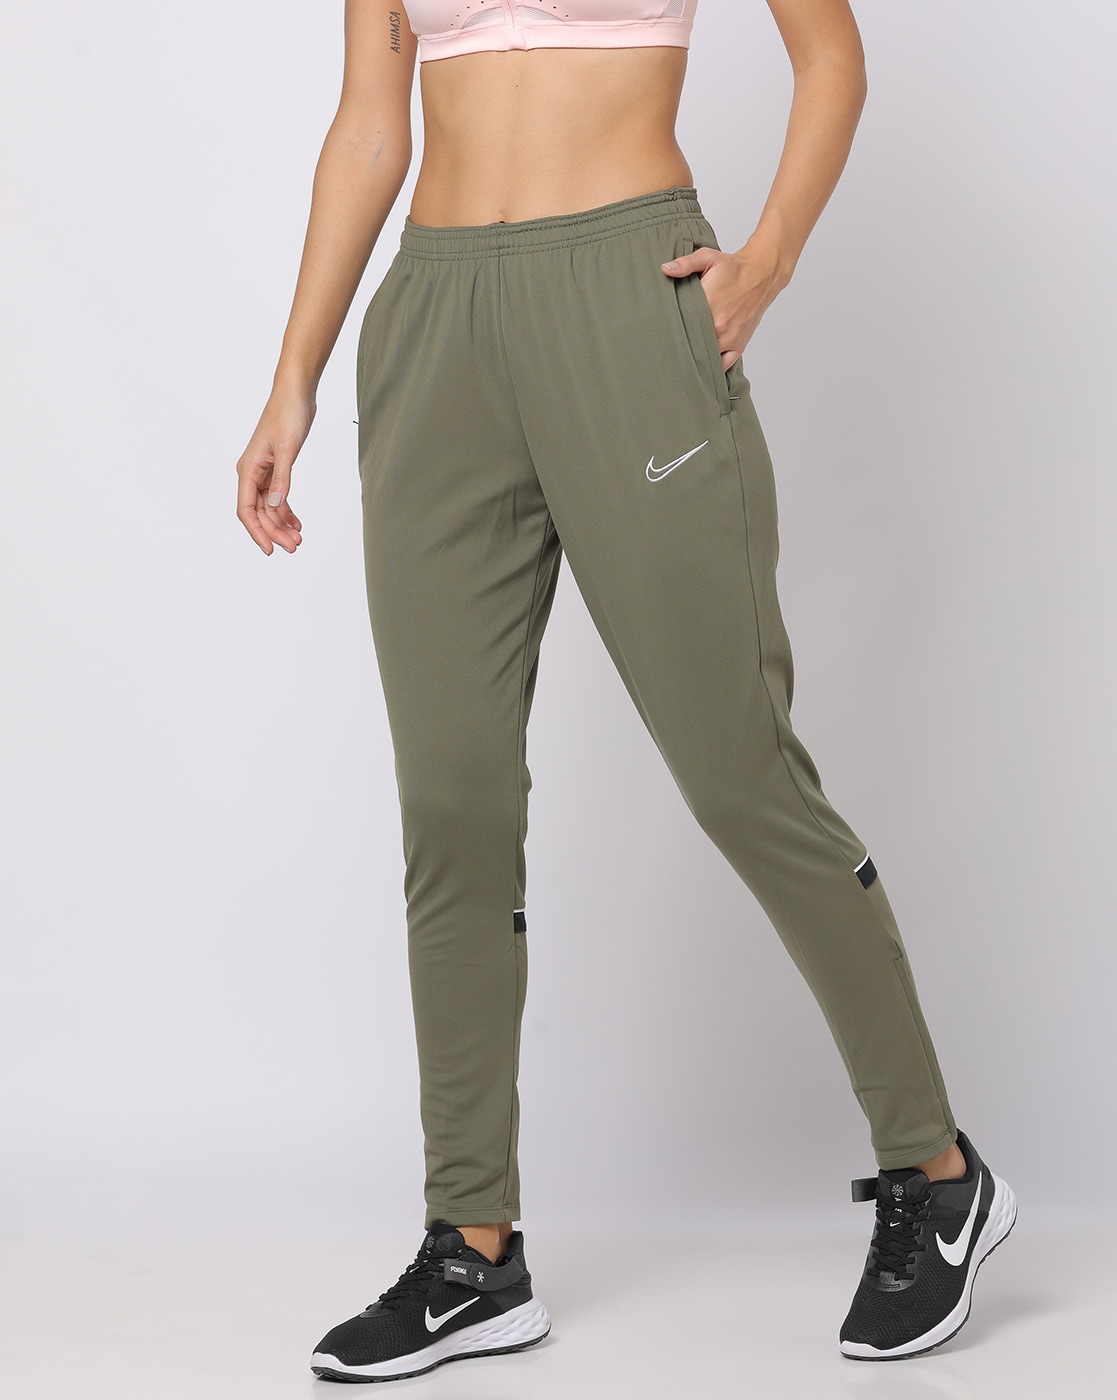 Nike | Pants | Nike Nsw Clash Training Joggers Mens Sizes Dm5555326 Olive  Green | Poshmark